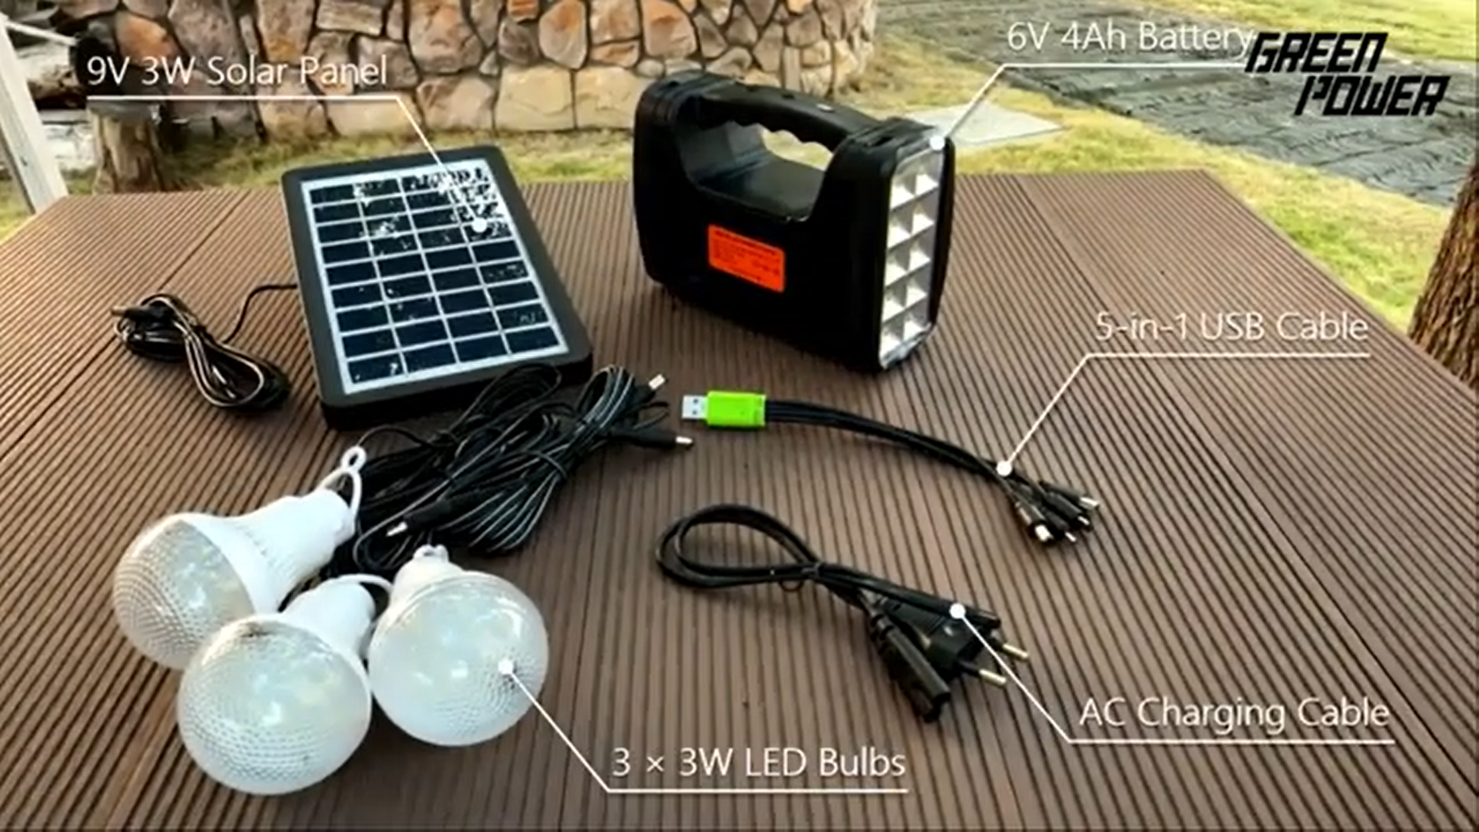 GP 351 미니 태양광 조명 키트 - 전기가 부족한 가정을 조명하는 간단하고 빠른 솔루션